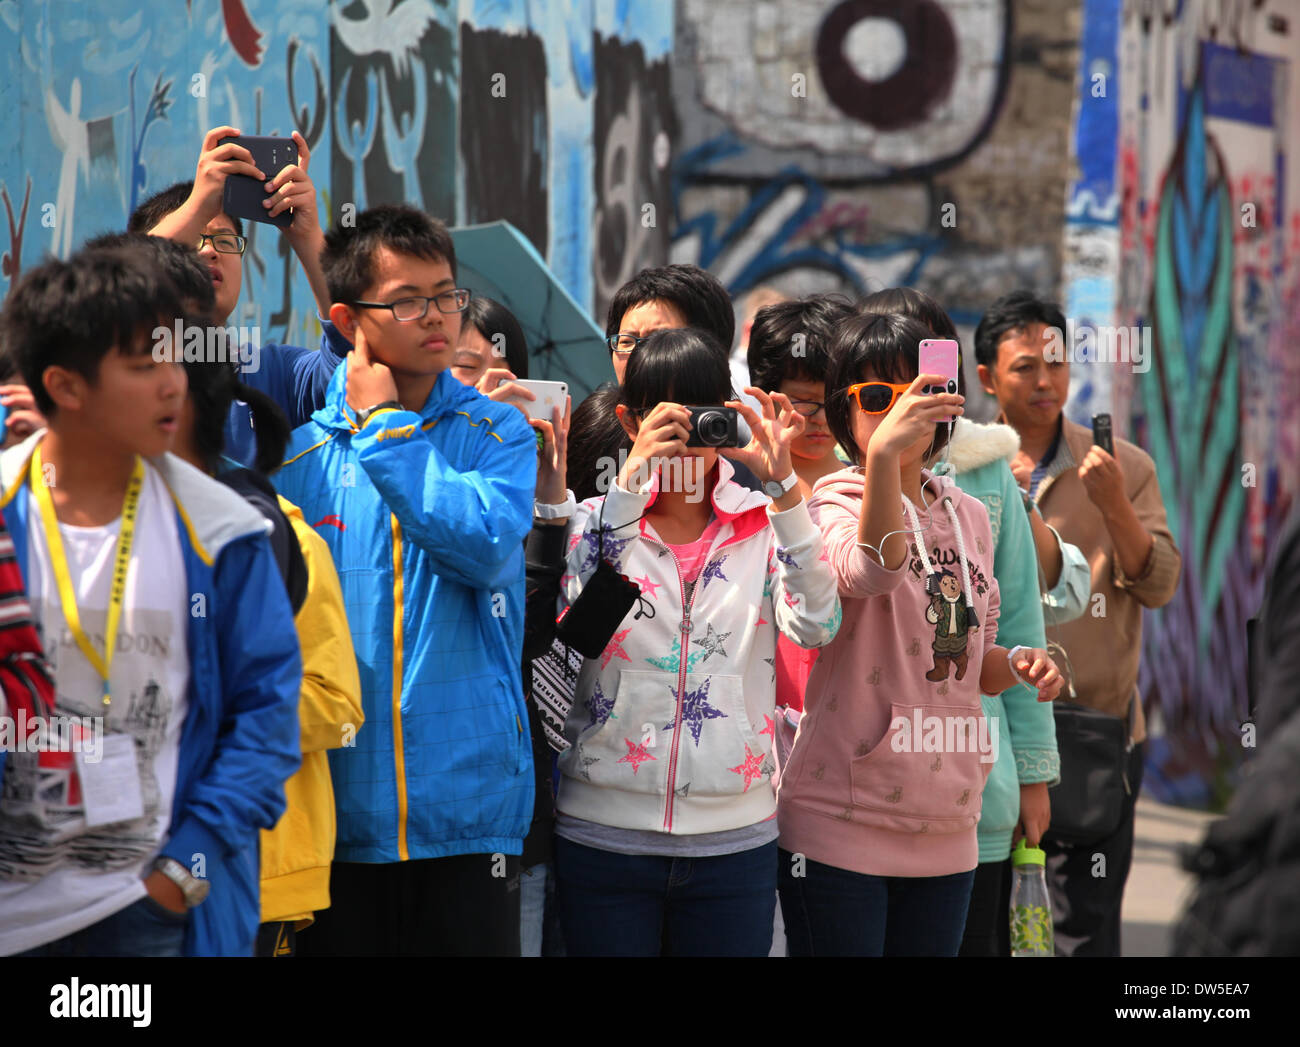 Eine Gruppe von asiatischen Touristen fotografieren an der East Side Gallery in Berlin, 13. Juli 2013. Jedes Jahr kommen immer mehr Touristen in die deutsche Hauptstadt. Das Foto ist Teil einer Serie über den Tourismus in Berlin. Foto. Wolfram Steinberg dpa Stockfoto